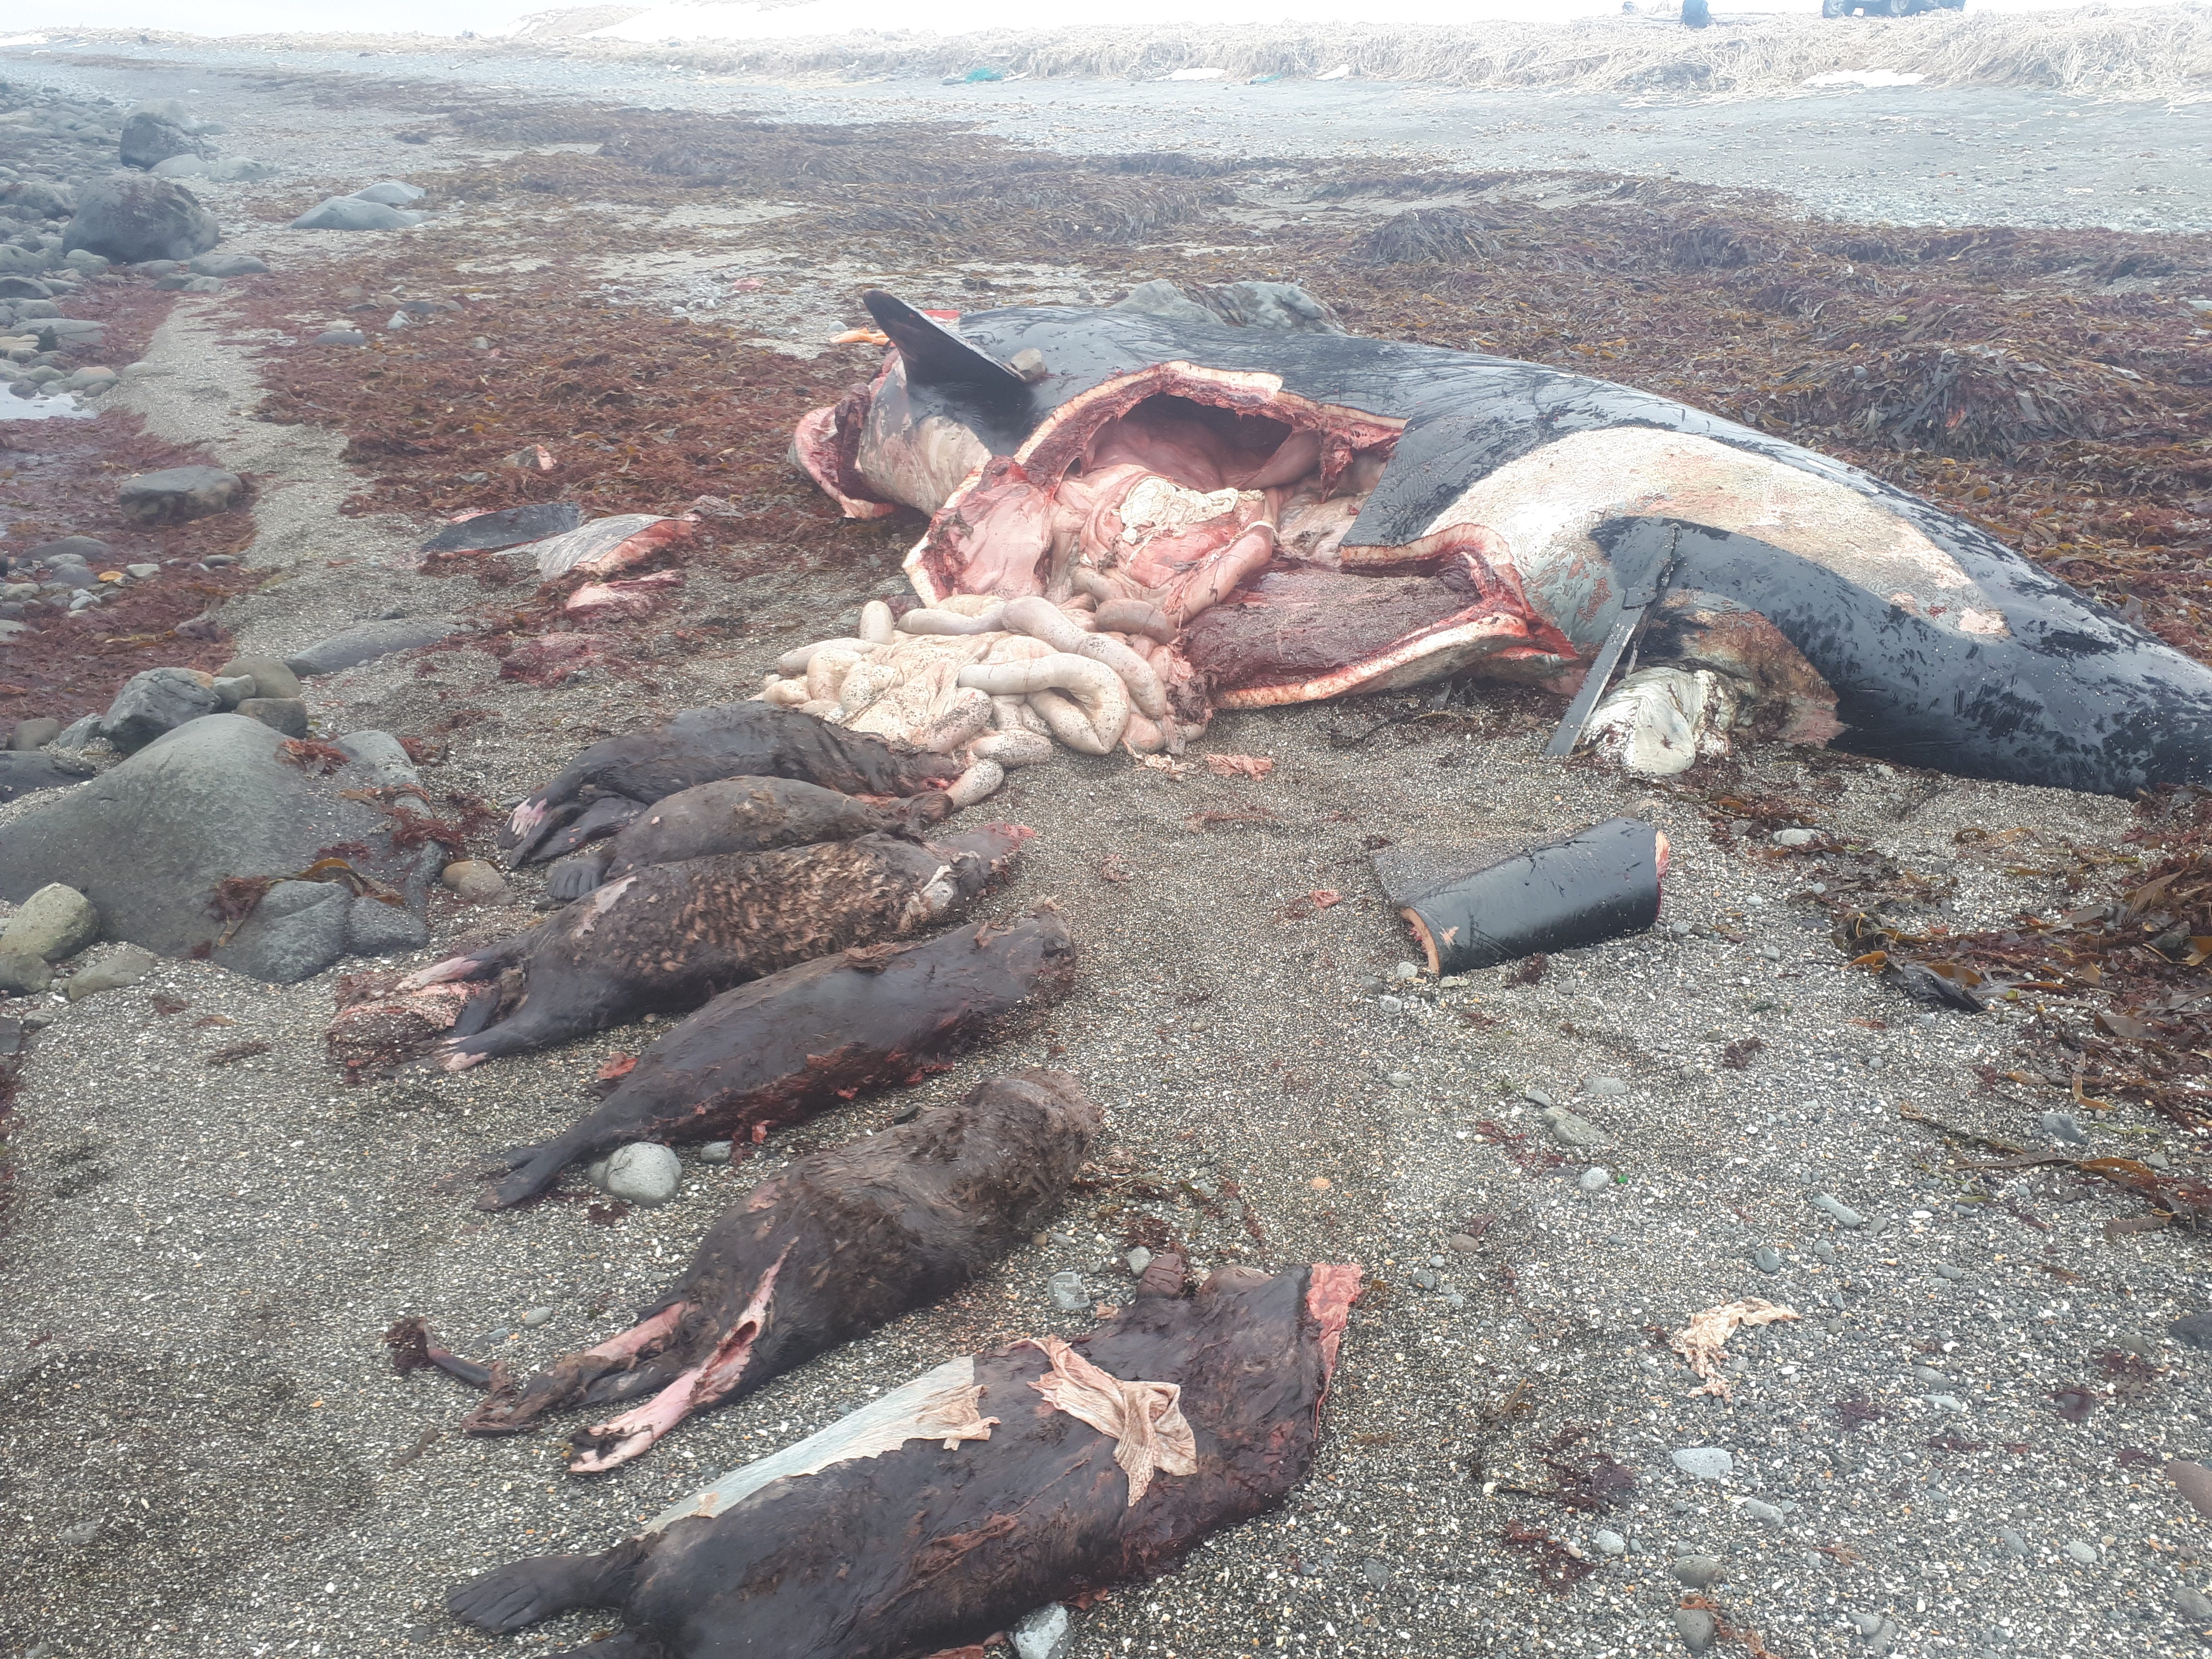 In ihrem Magen wurden ein toter Killerwal (Orcinus orca) und sechs Seeotter (Enhydra lutris) gefunden